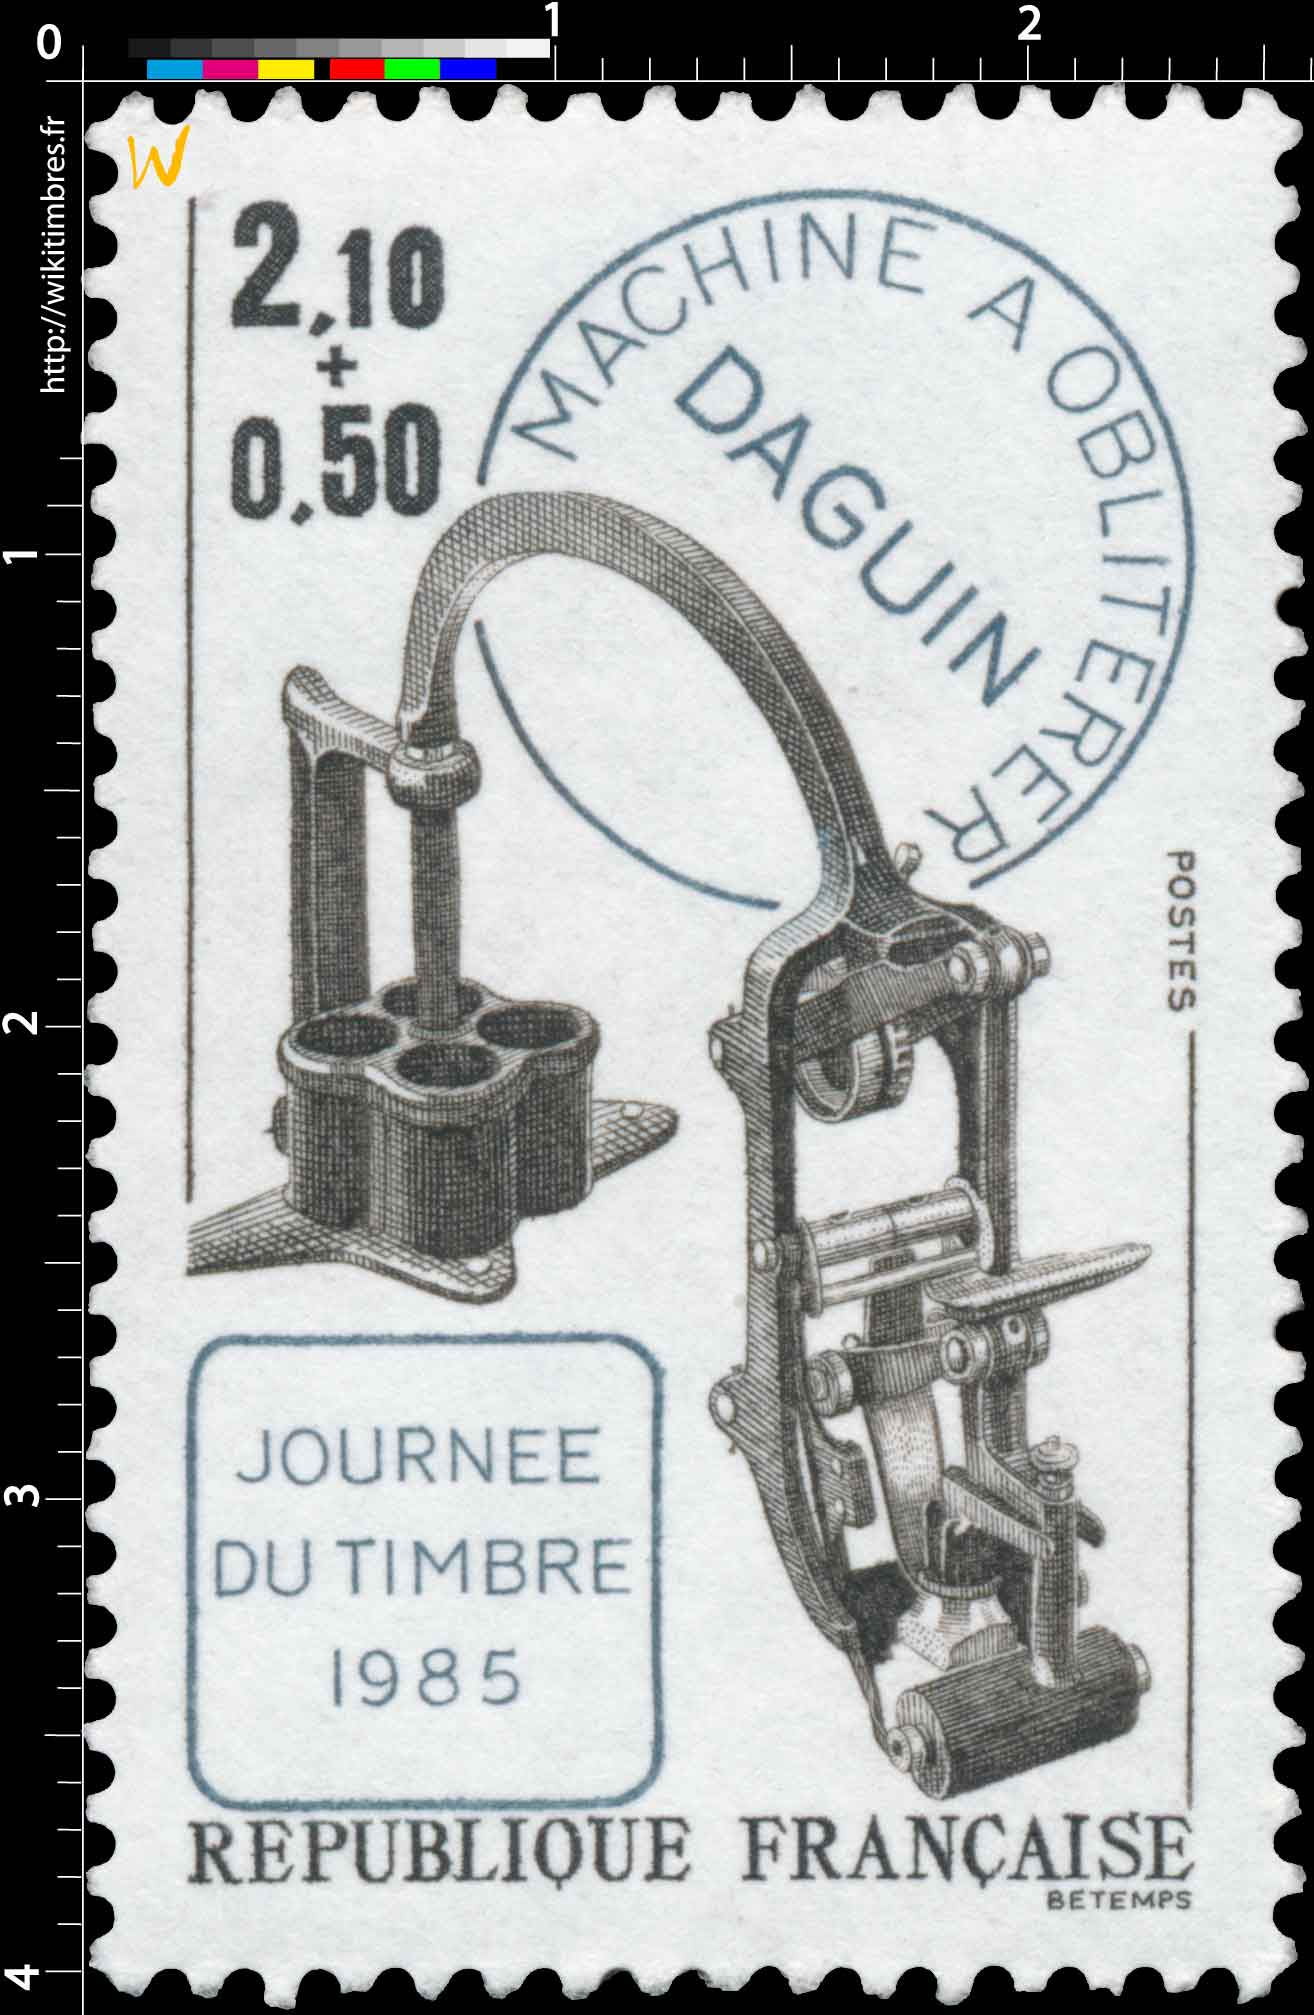 JOURNÉE DU TIMBRE 1985 MACHINE À OBLITÉRER DAGUIN